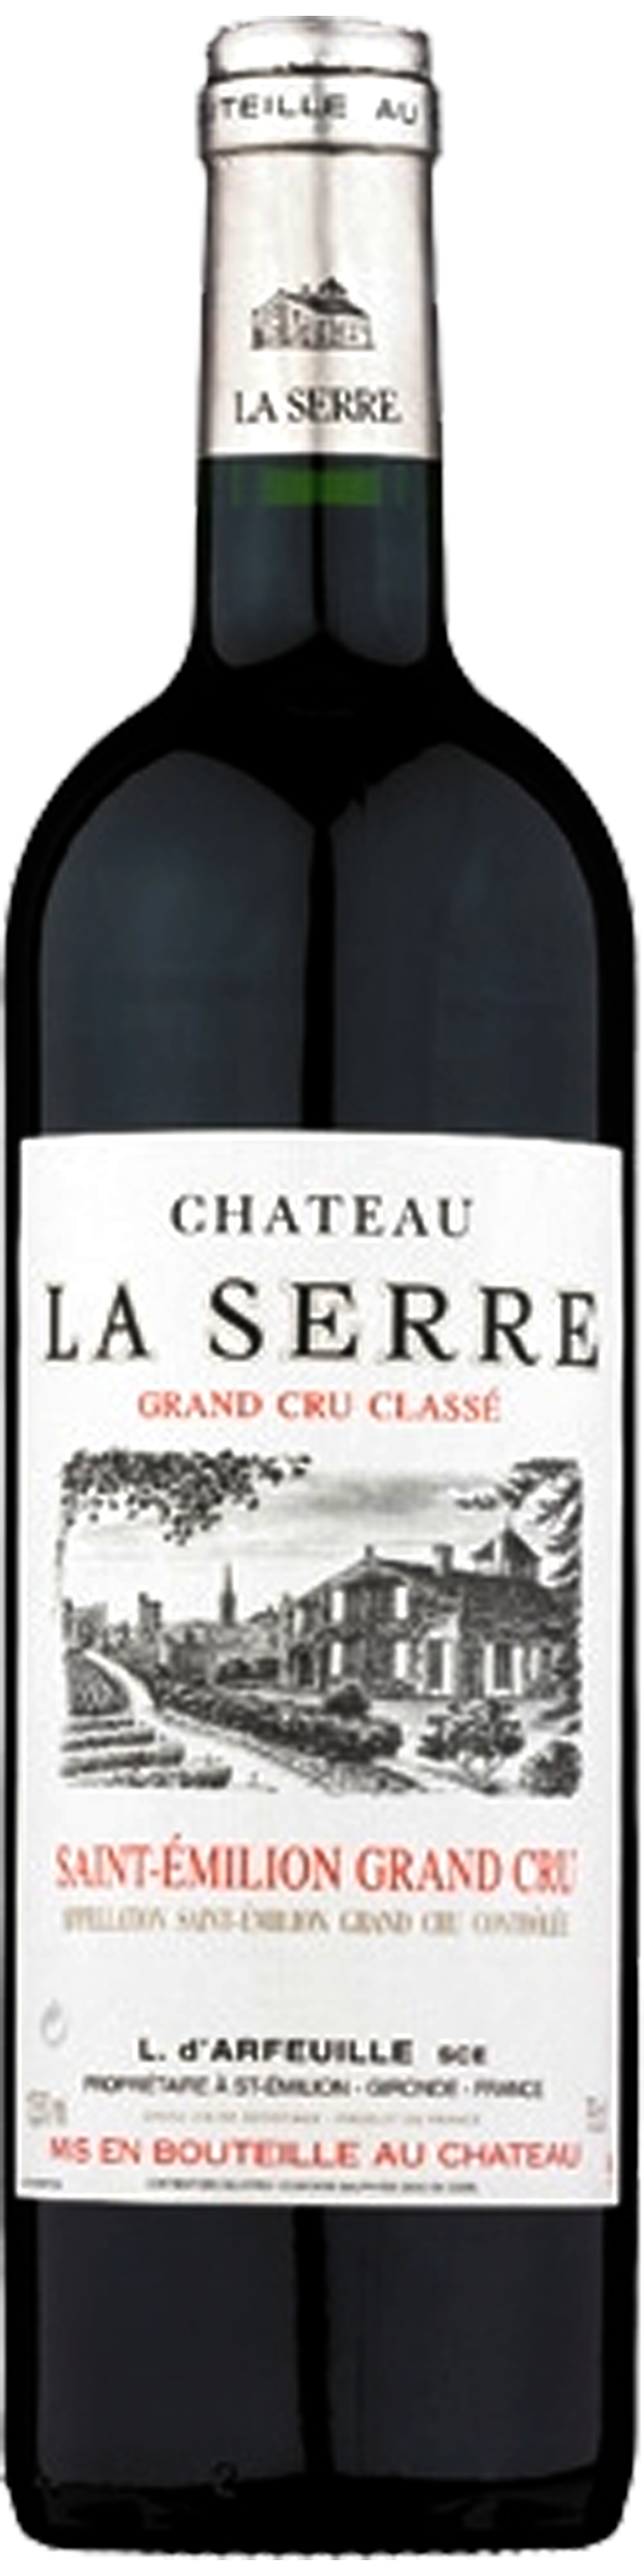 Image of product Château La Serre, St Emilion Grand Cru Classe